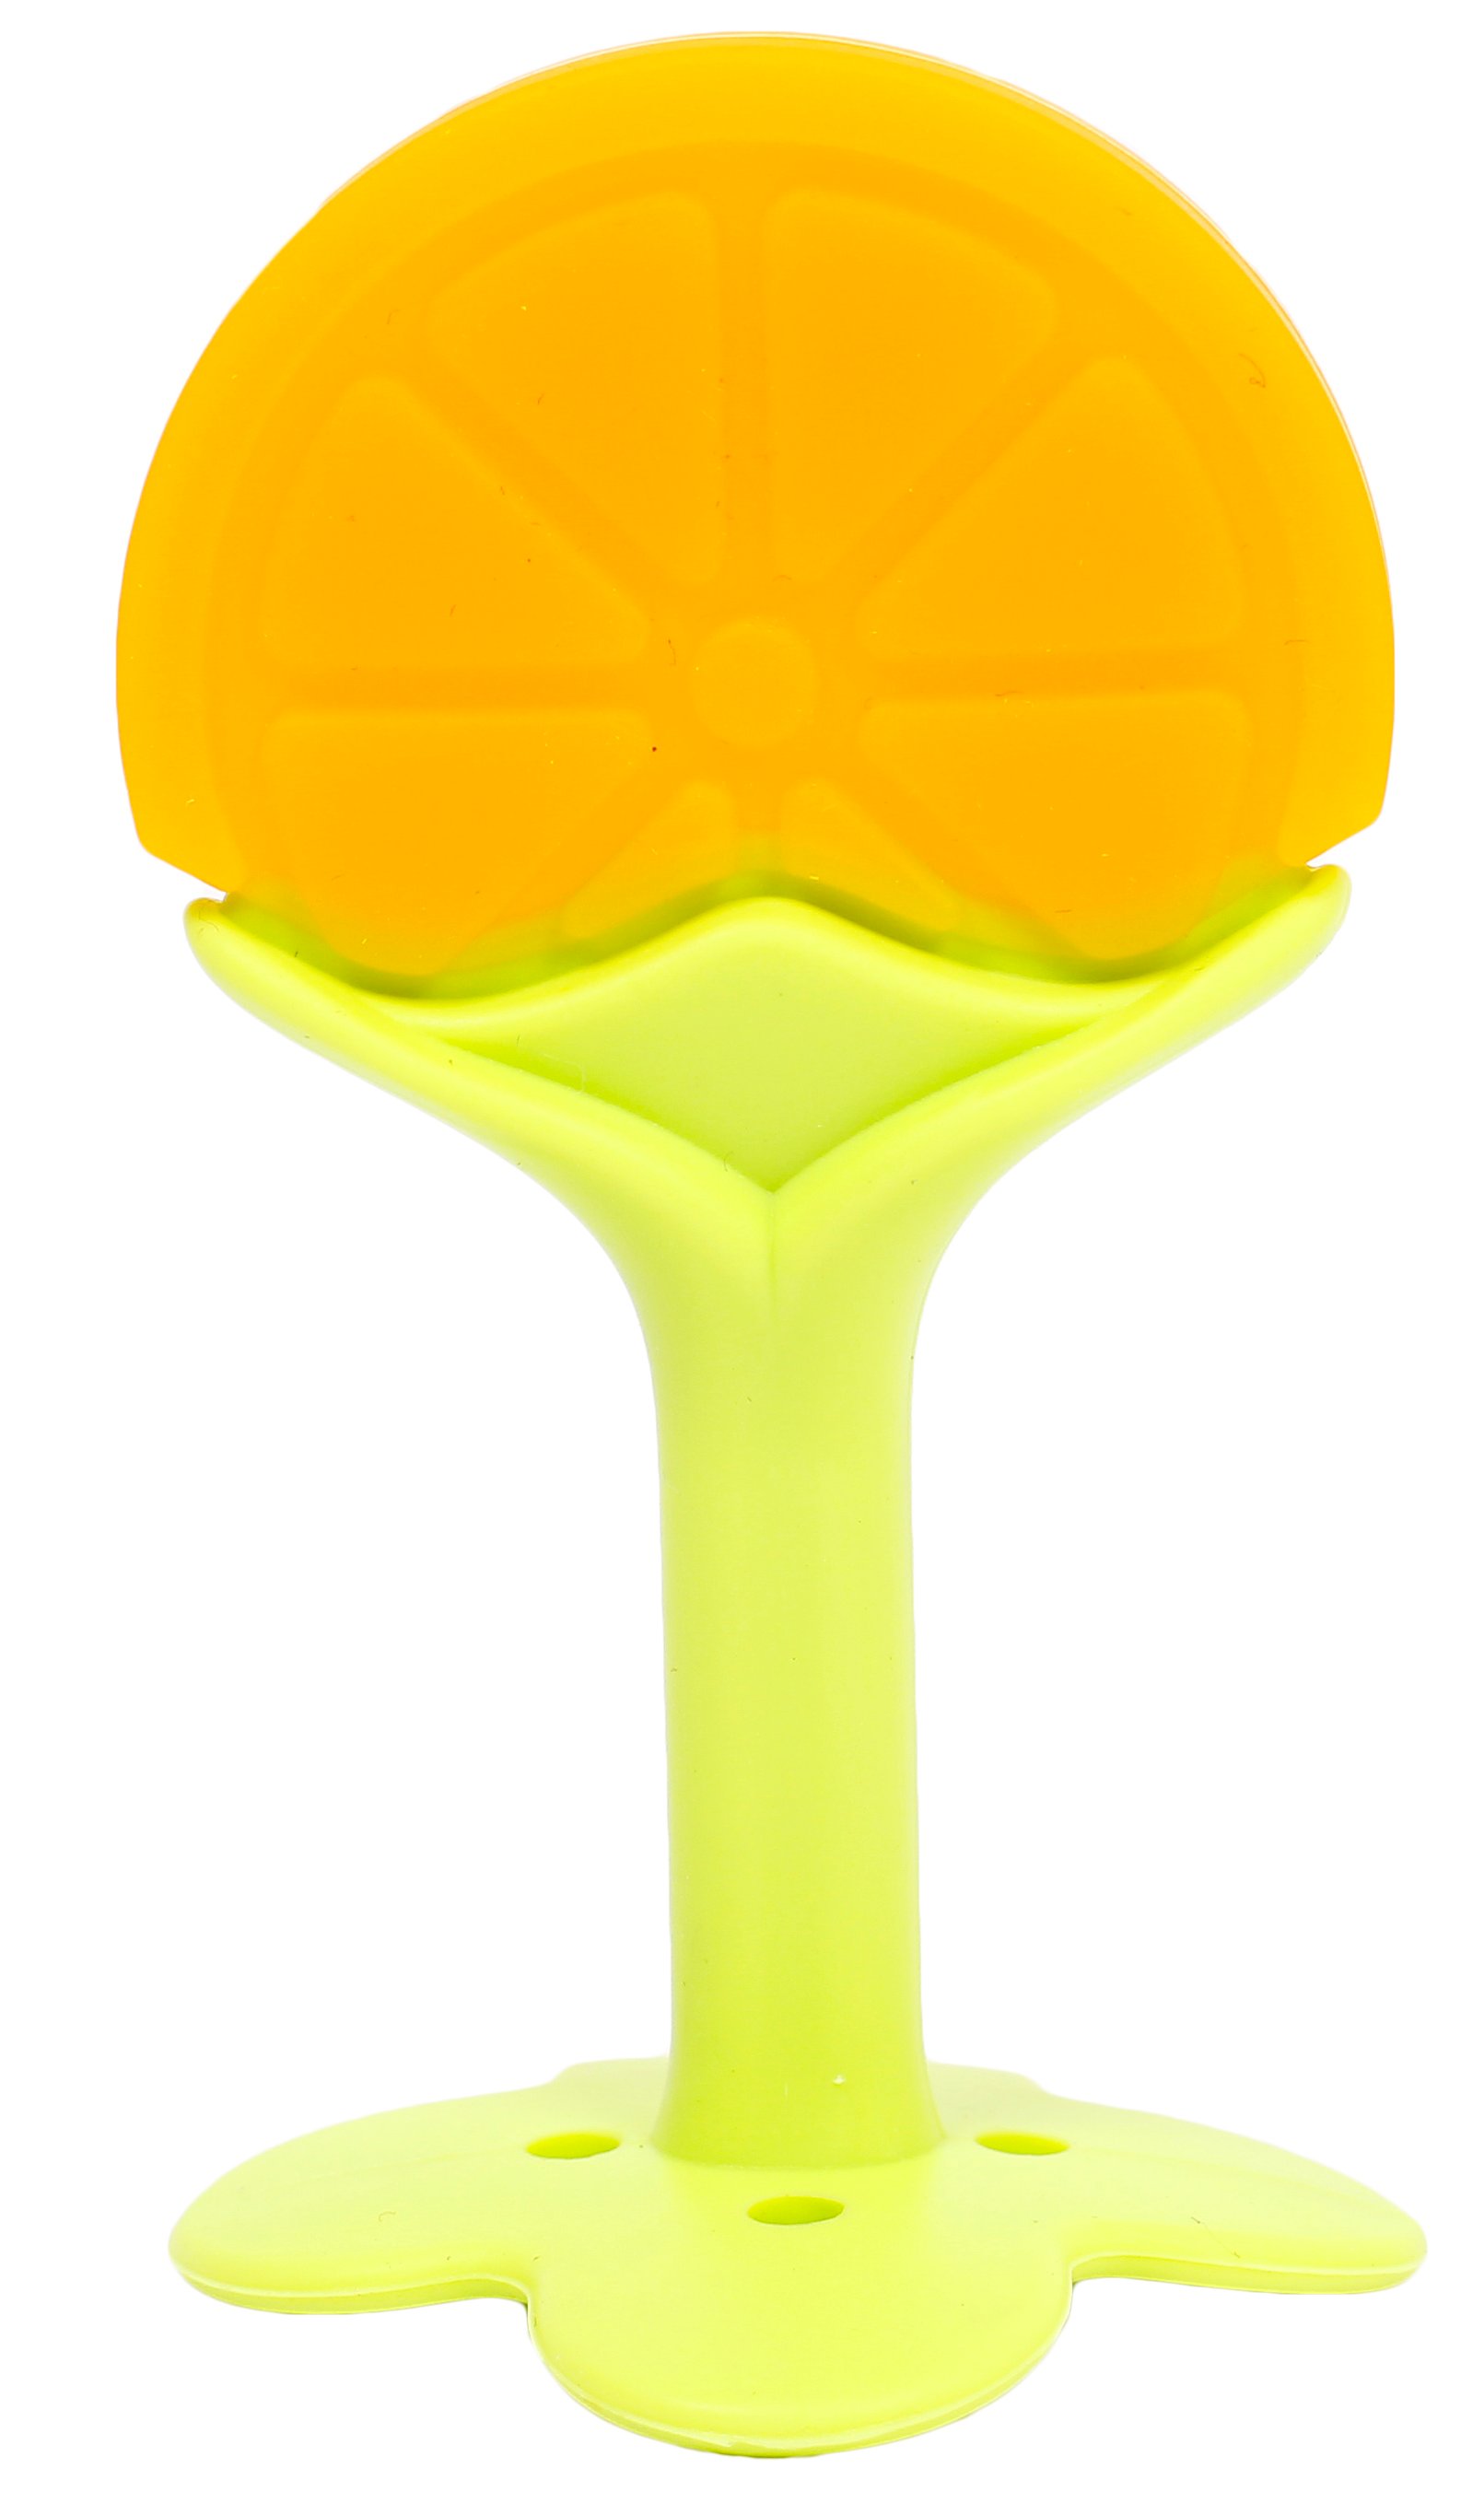 Прорезыватель для зубов Lindo Апельсин, силиконовый, оранжевый с салатовым (LI 320 апел) - фото 1